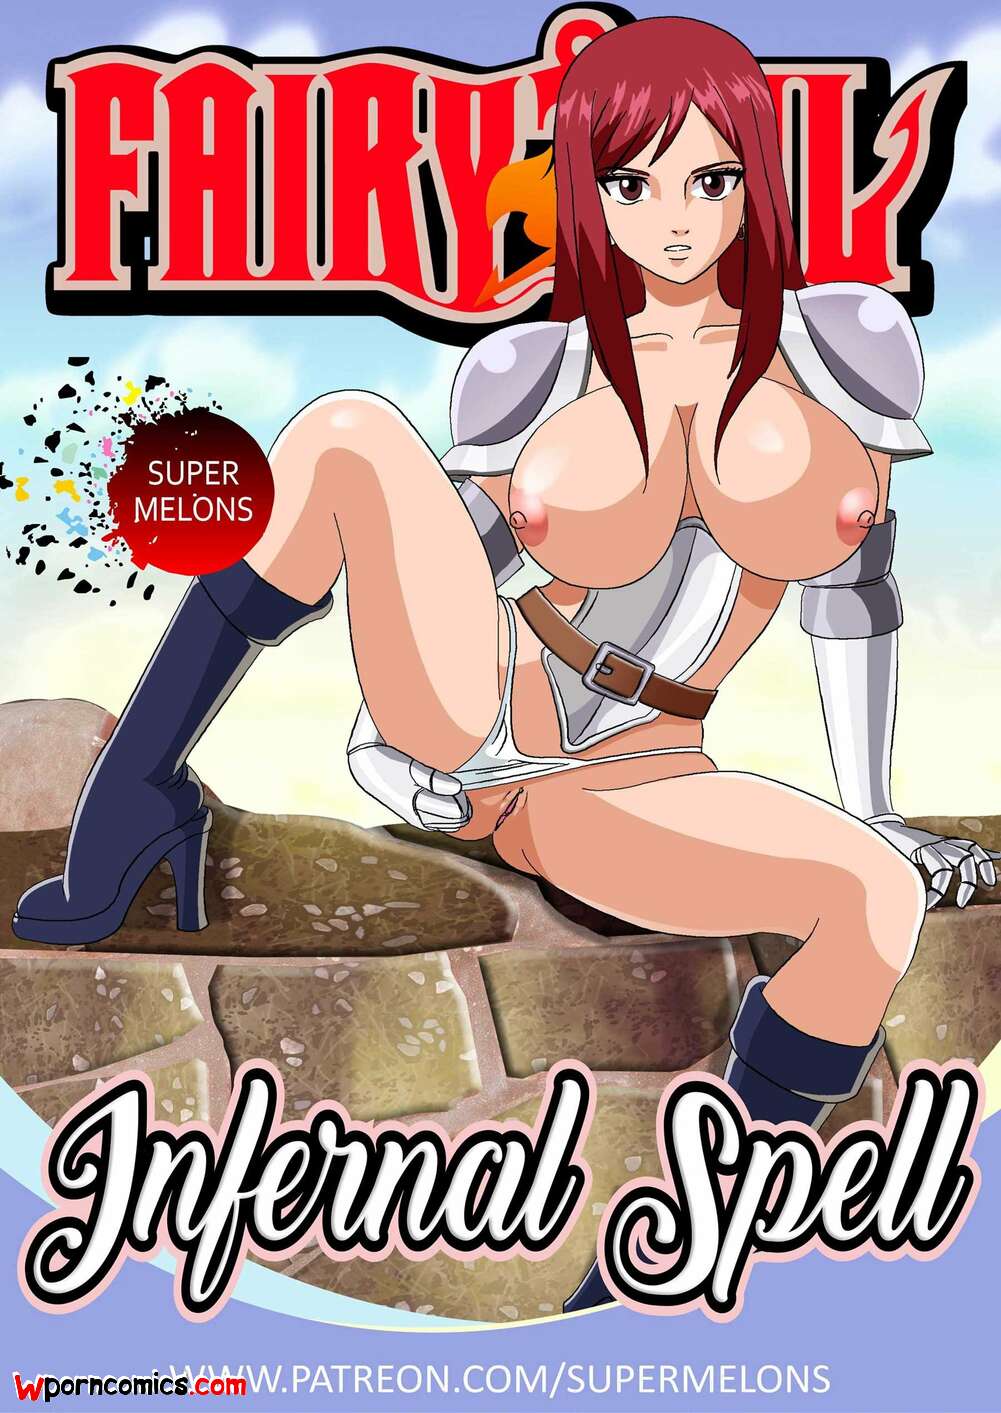 Fairytail Porn